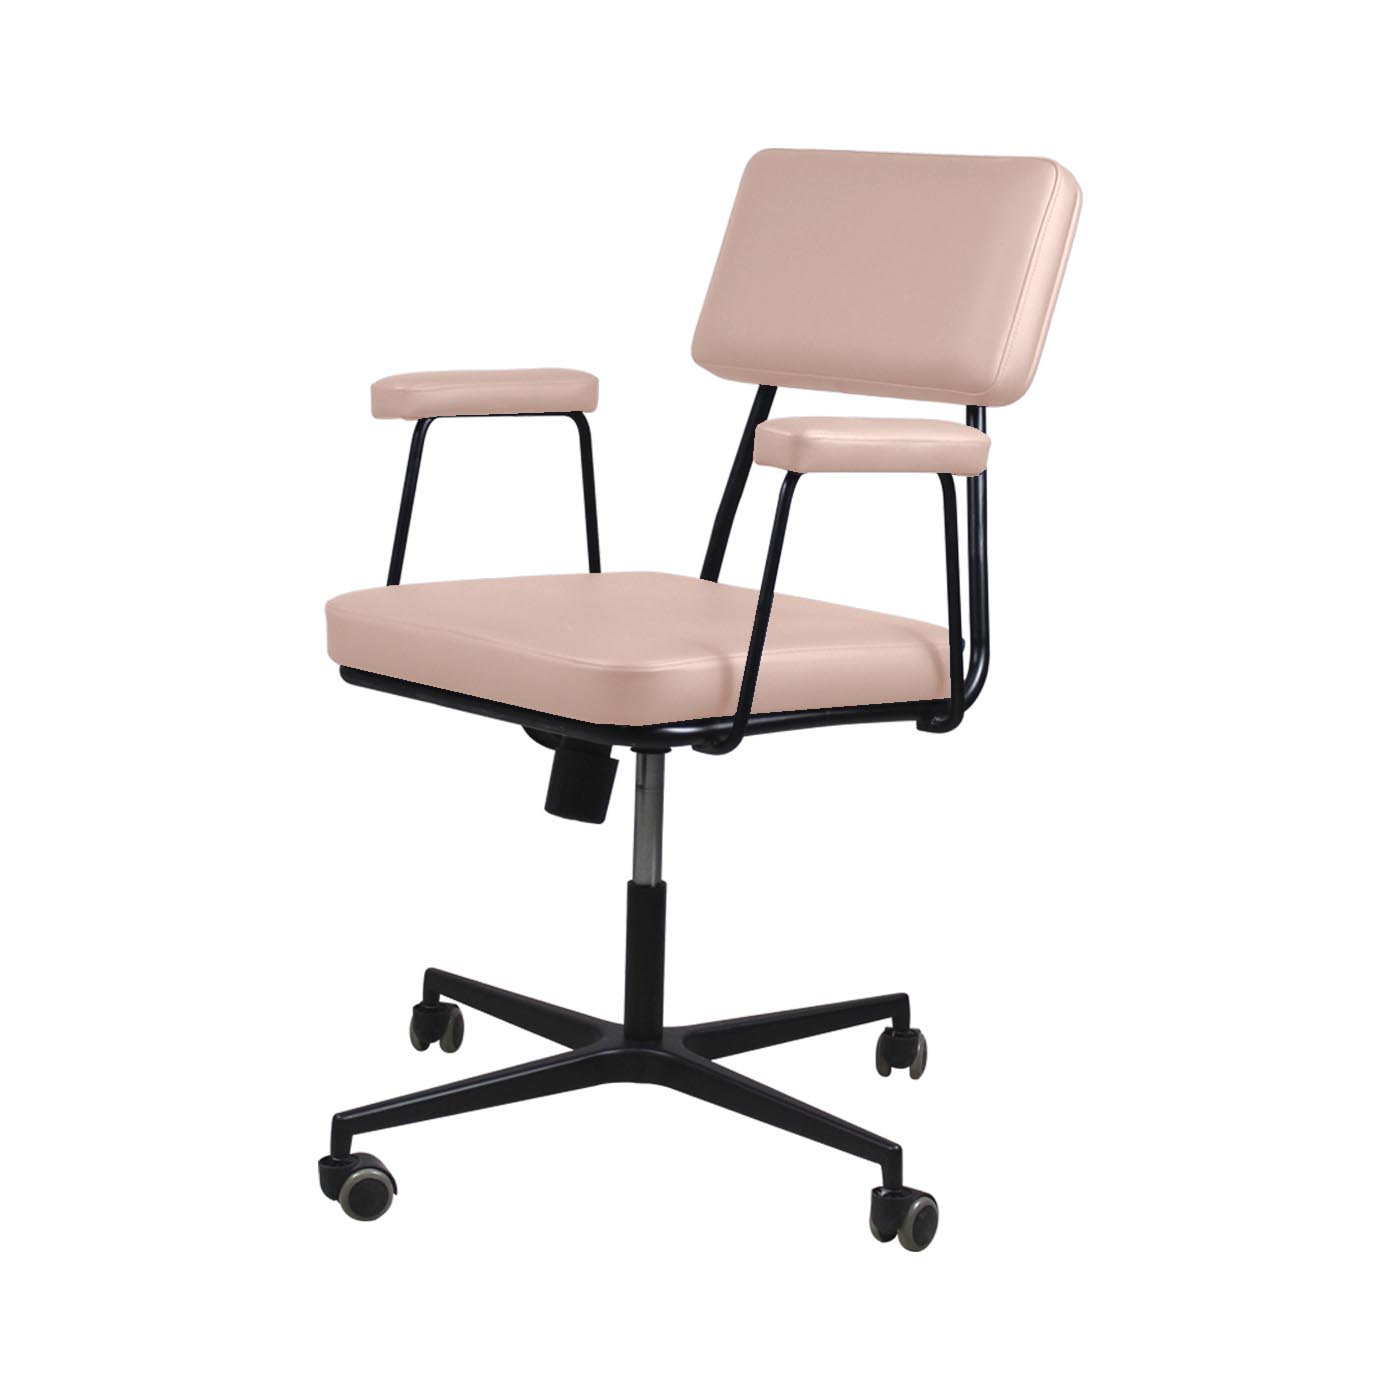 Noblitt Pale Pink Work Chair